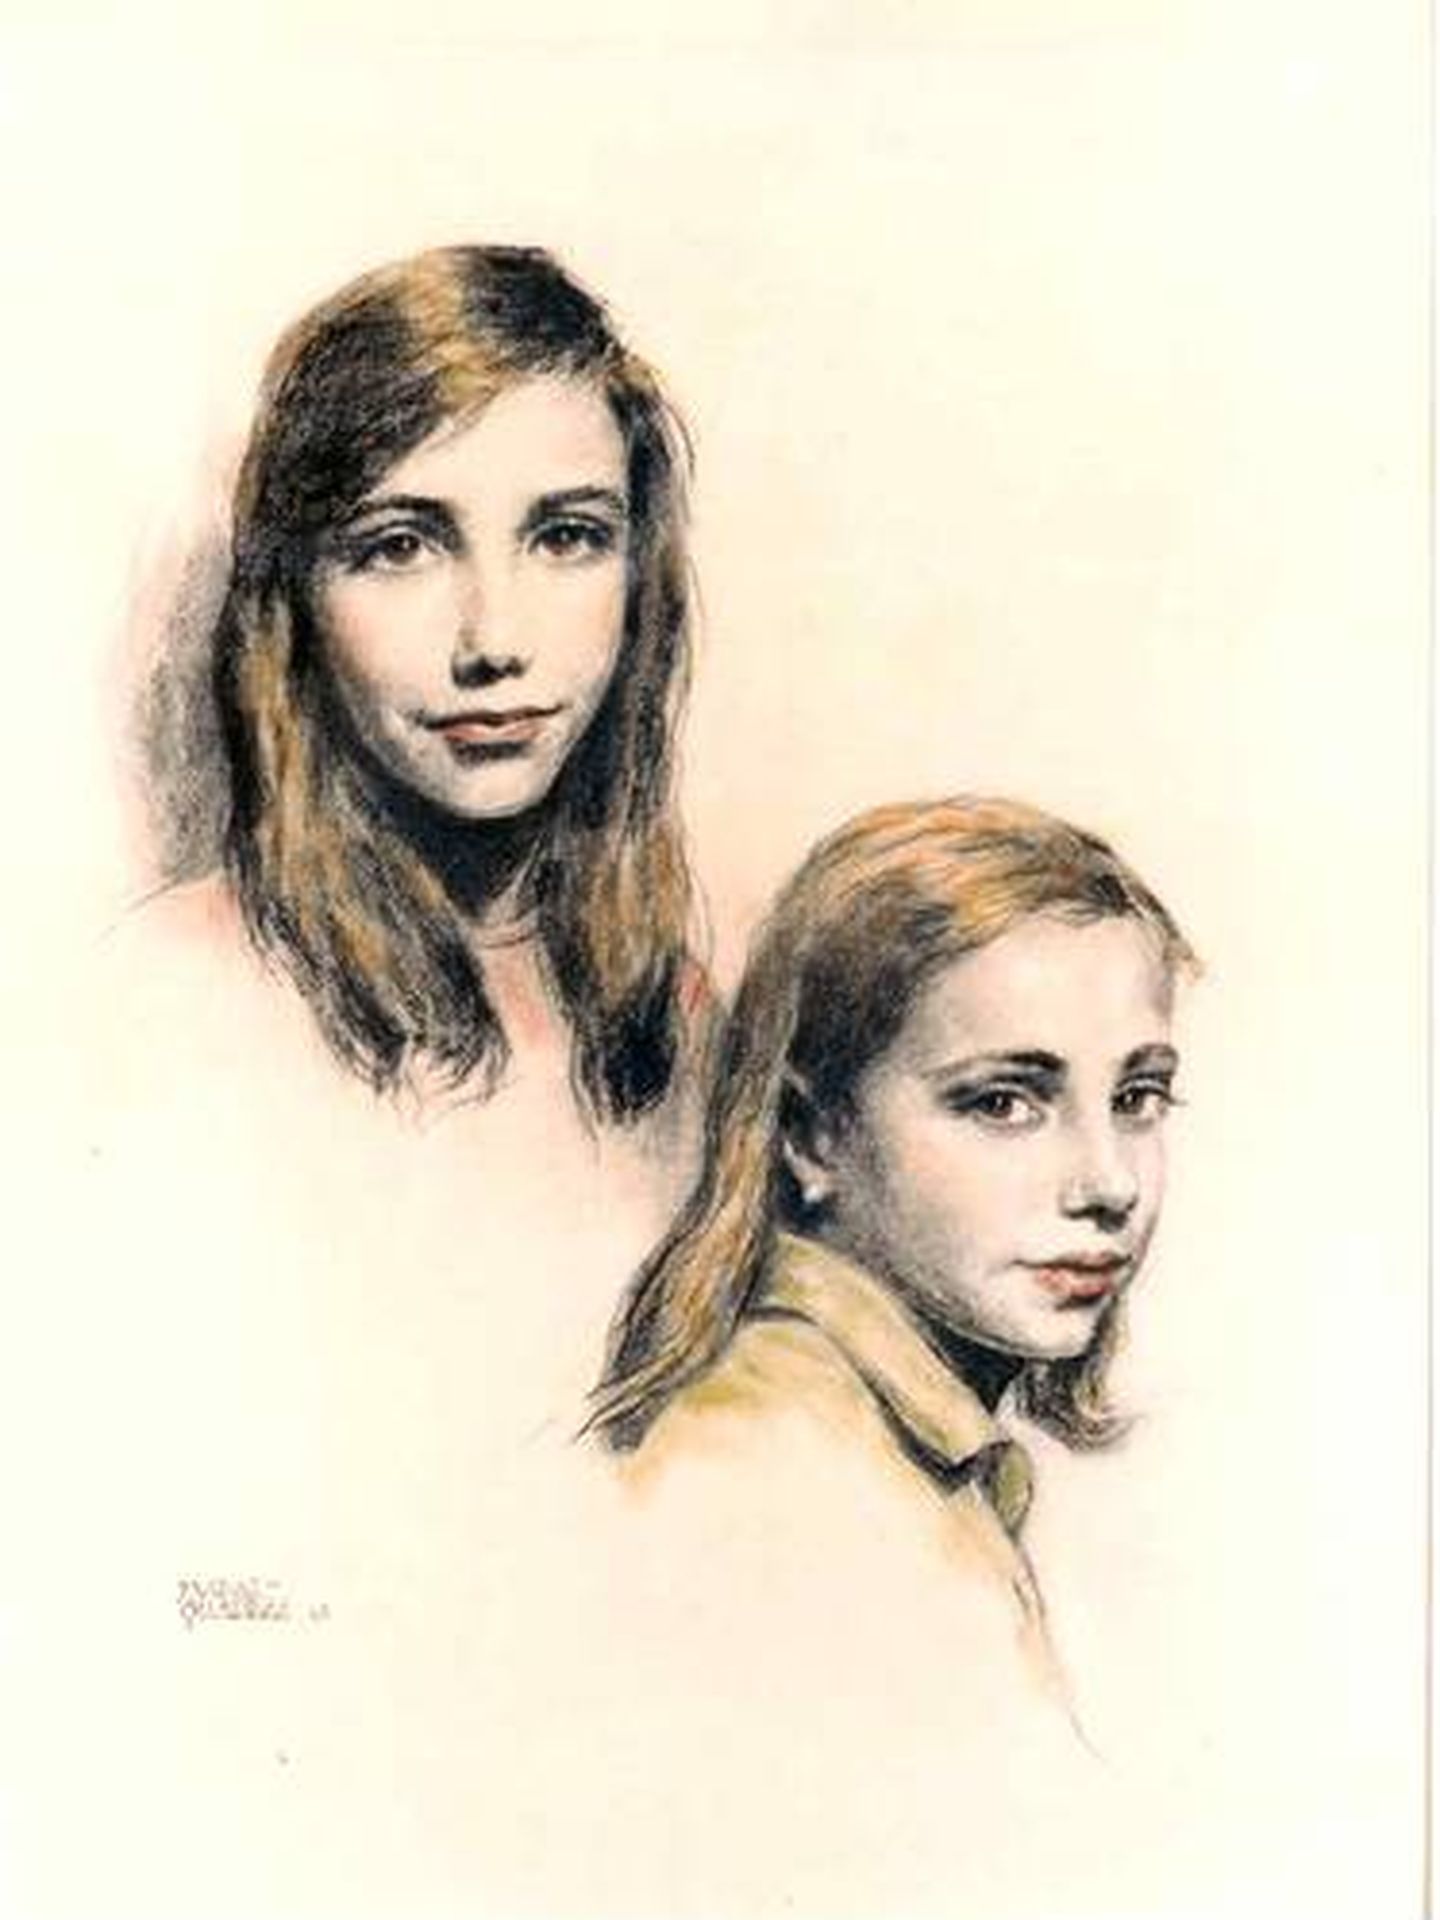 Elena y Alicia Daurella de Aguilera, de pequeñas, pintadas por el artista Alejo Vidal-Quadras. (Cortesía)